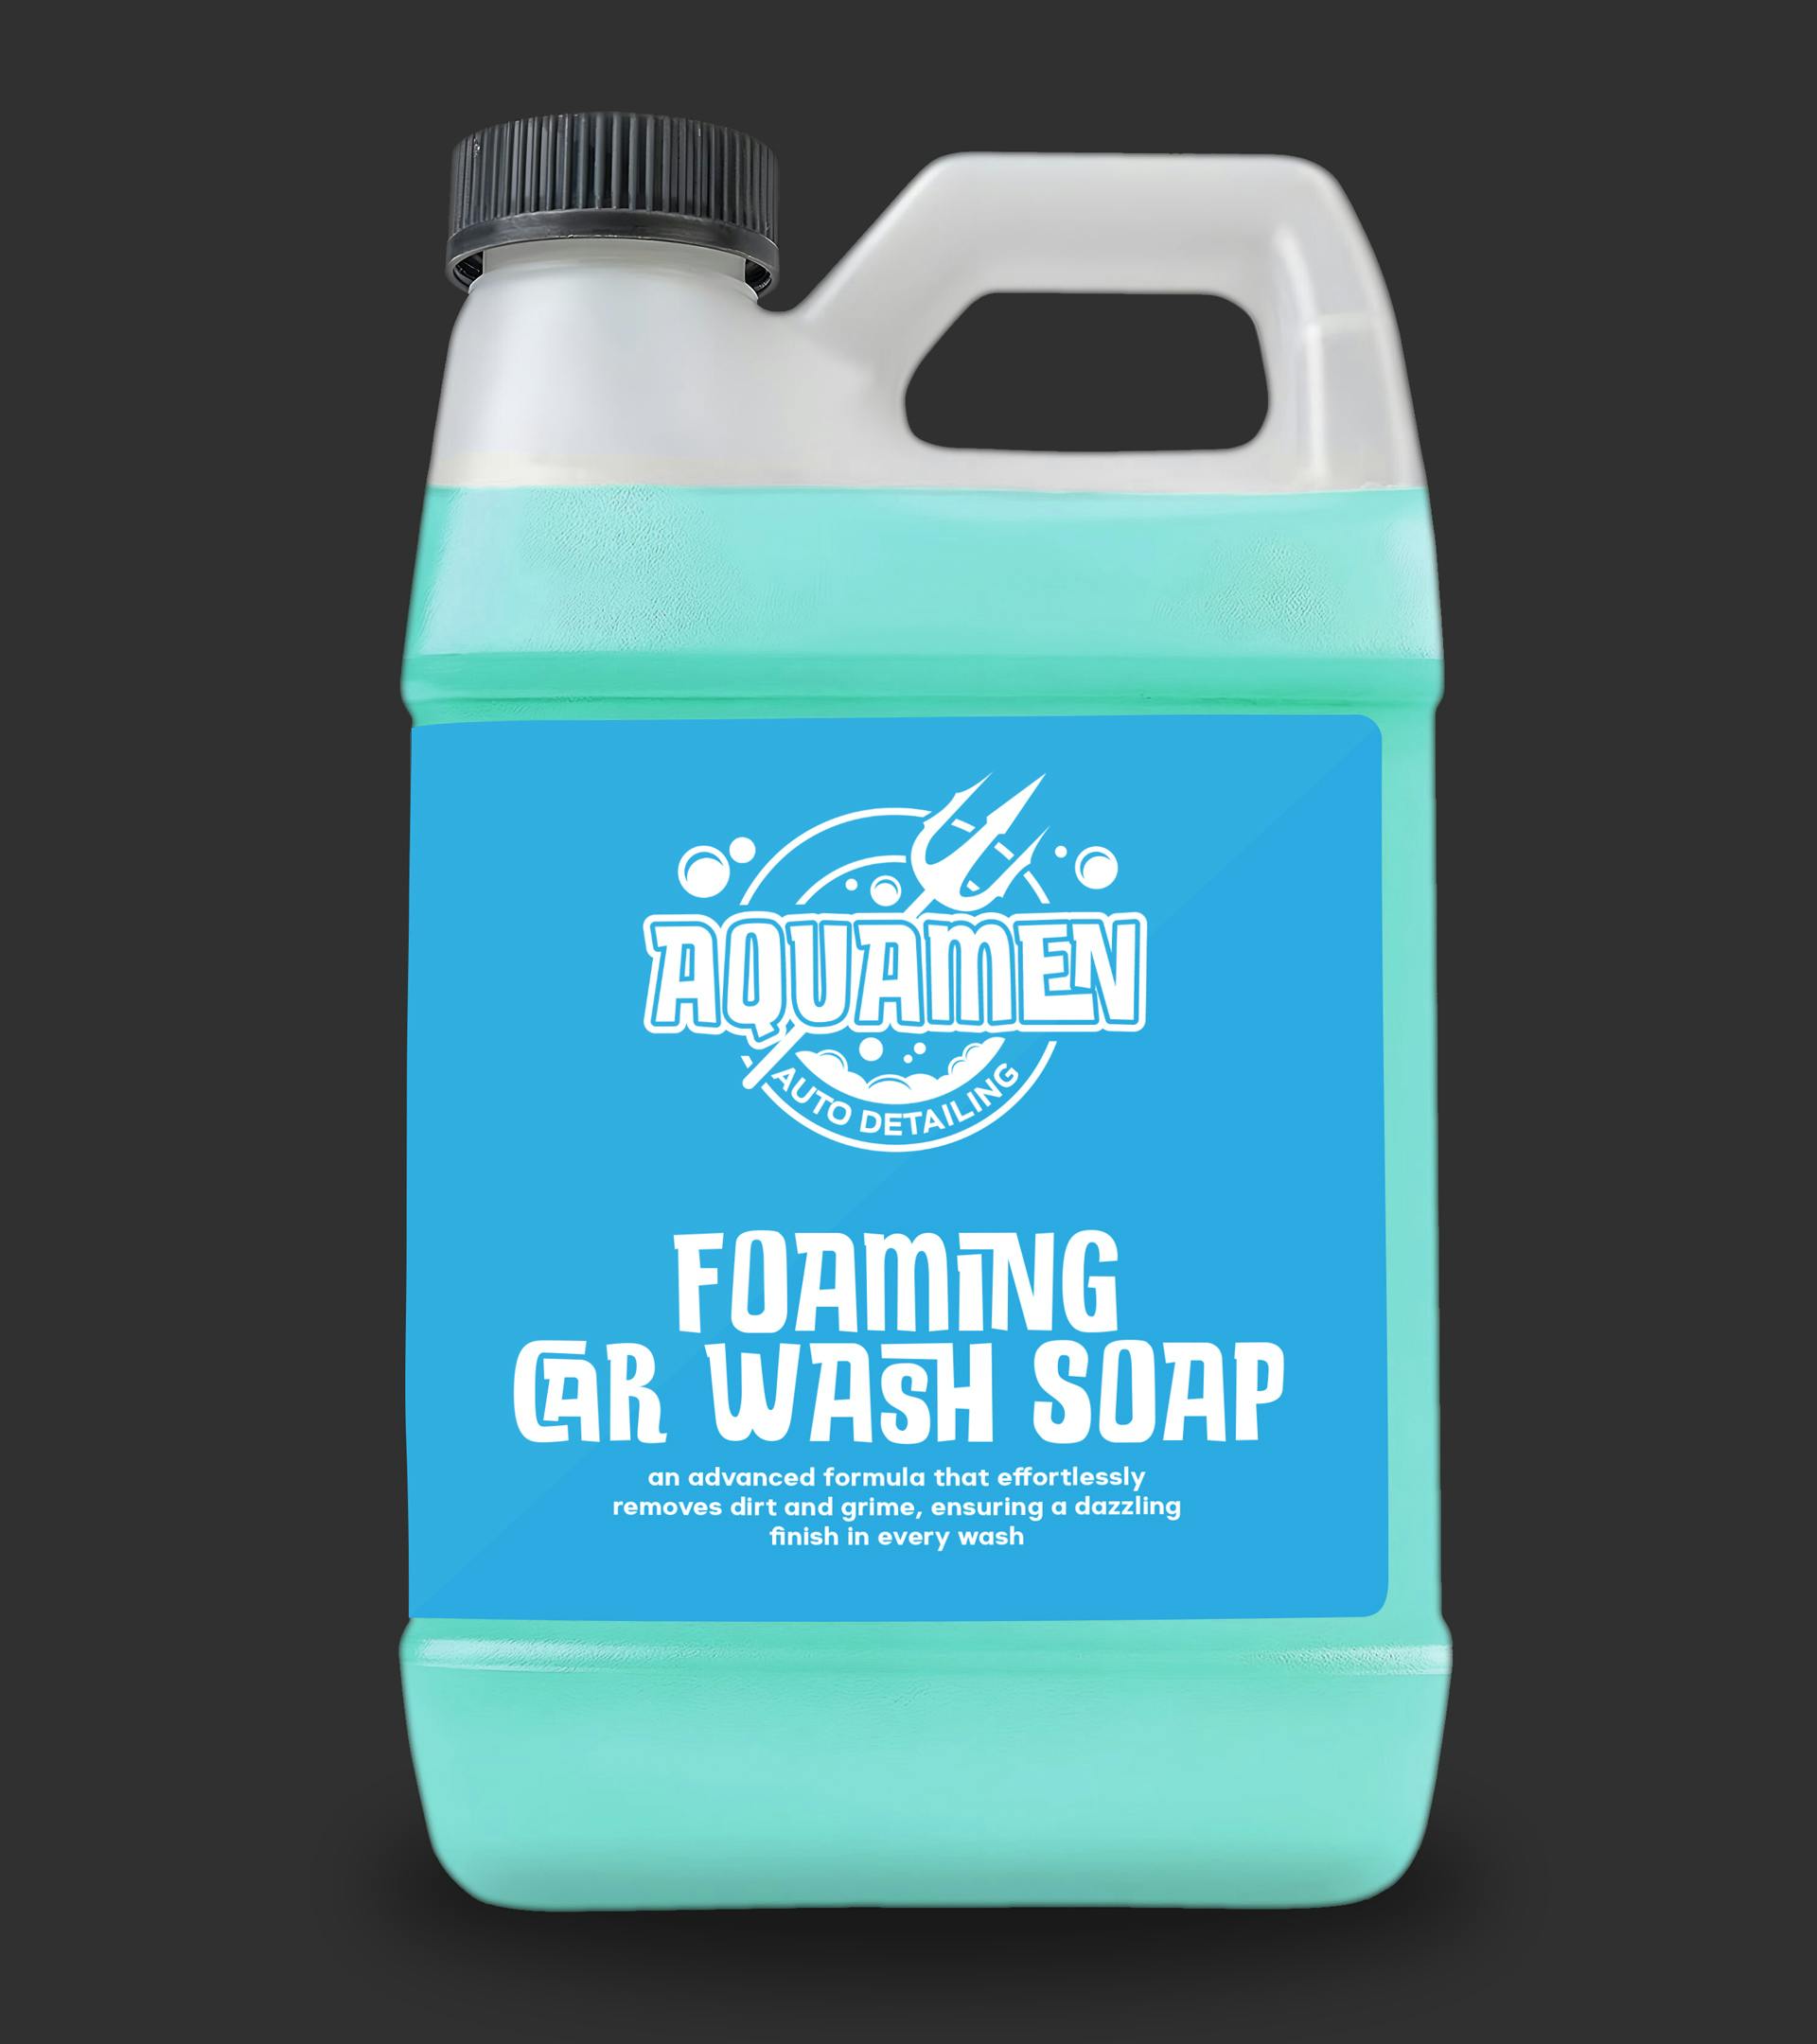 A bottle of Aquamen foaming car wash soap